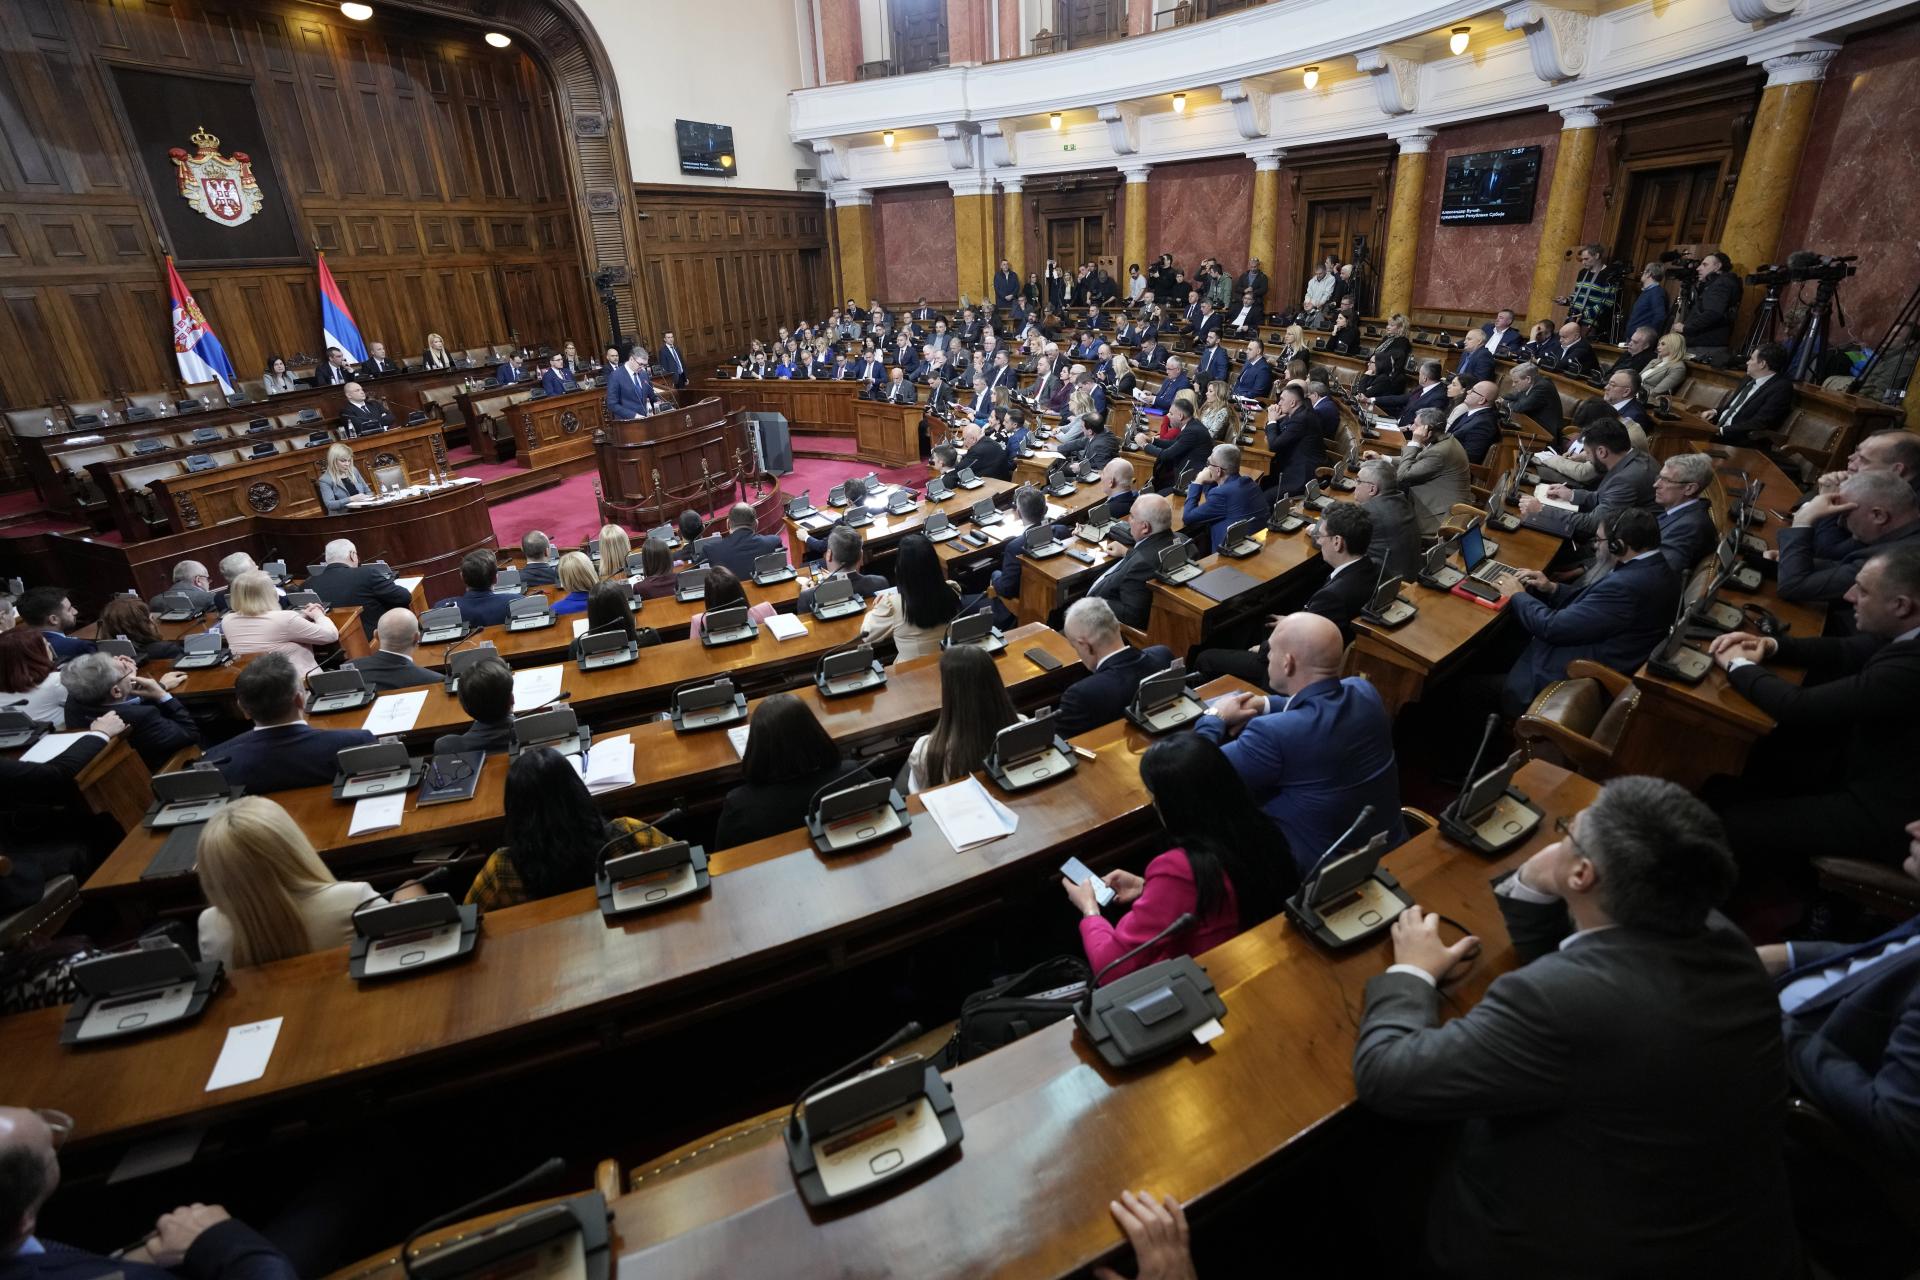 Srbský poslanec pozeral v parlamente porno, musel rezignovať